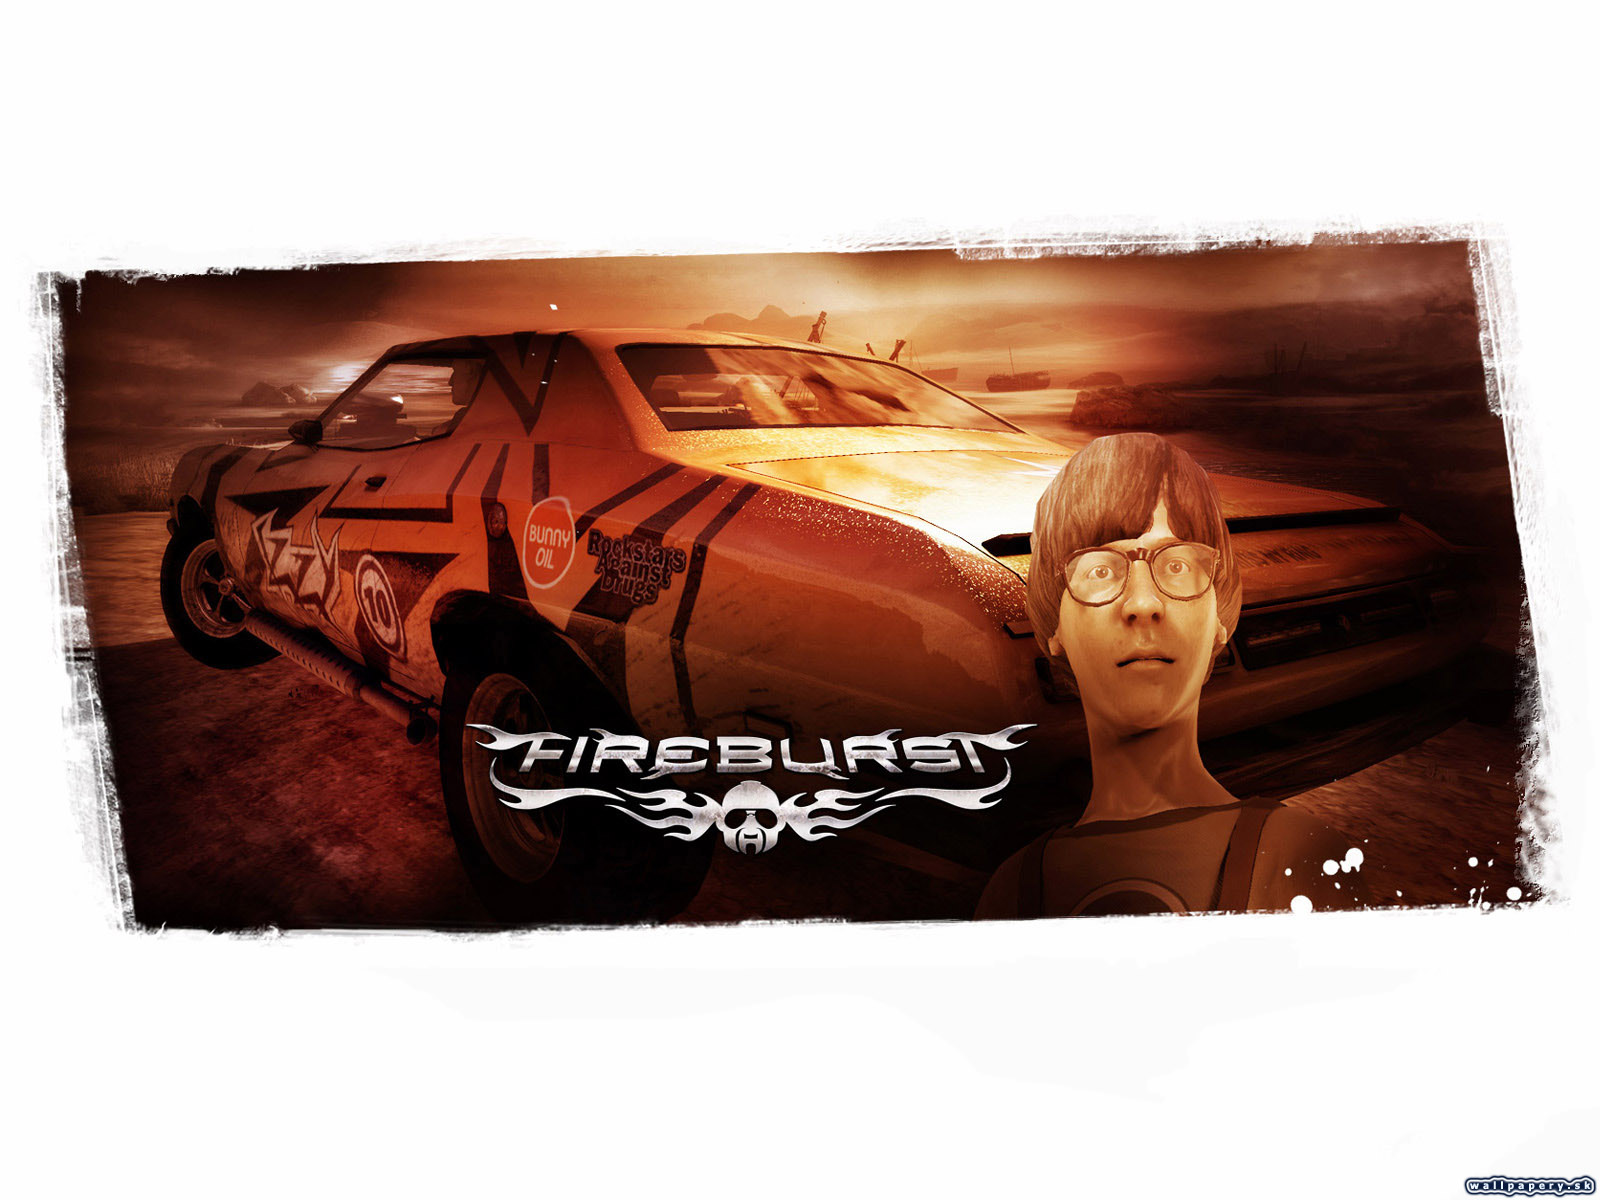 Fireburst - wallpaper 8